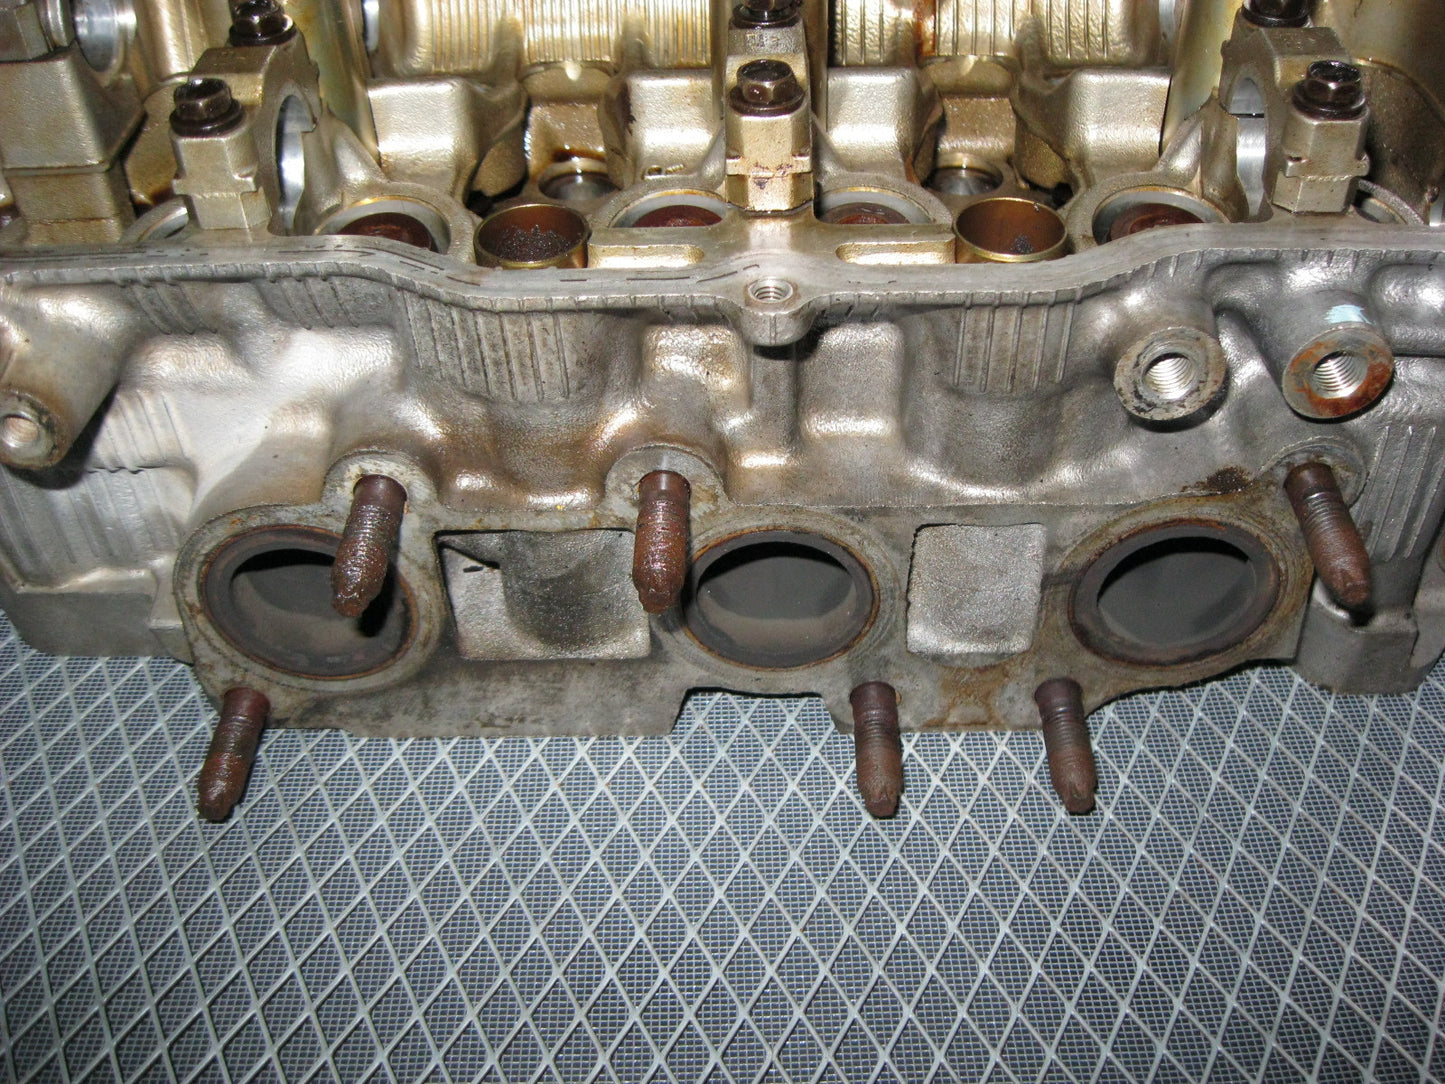 JDM Toyota 1MZ-FE 3.0L V6 None VVTi Engine Cylinder Head - Right